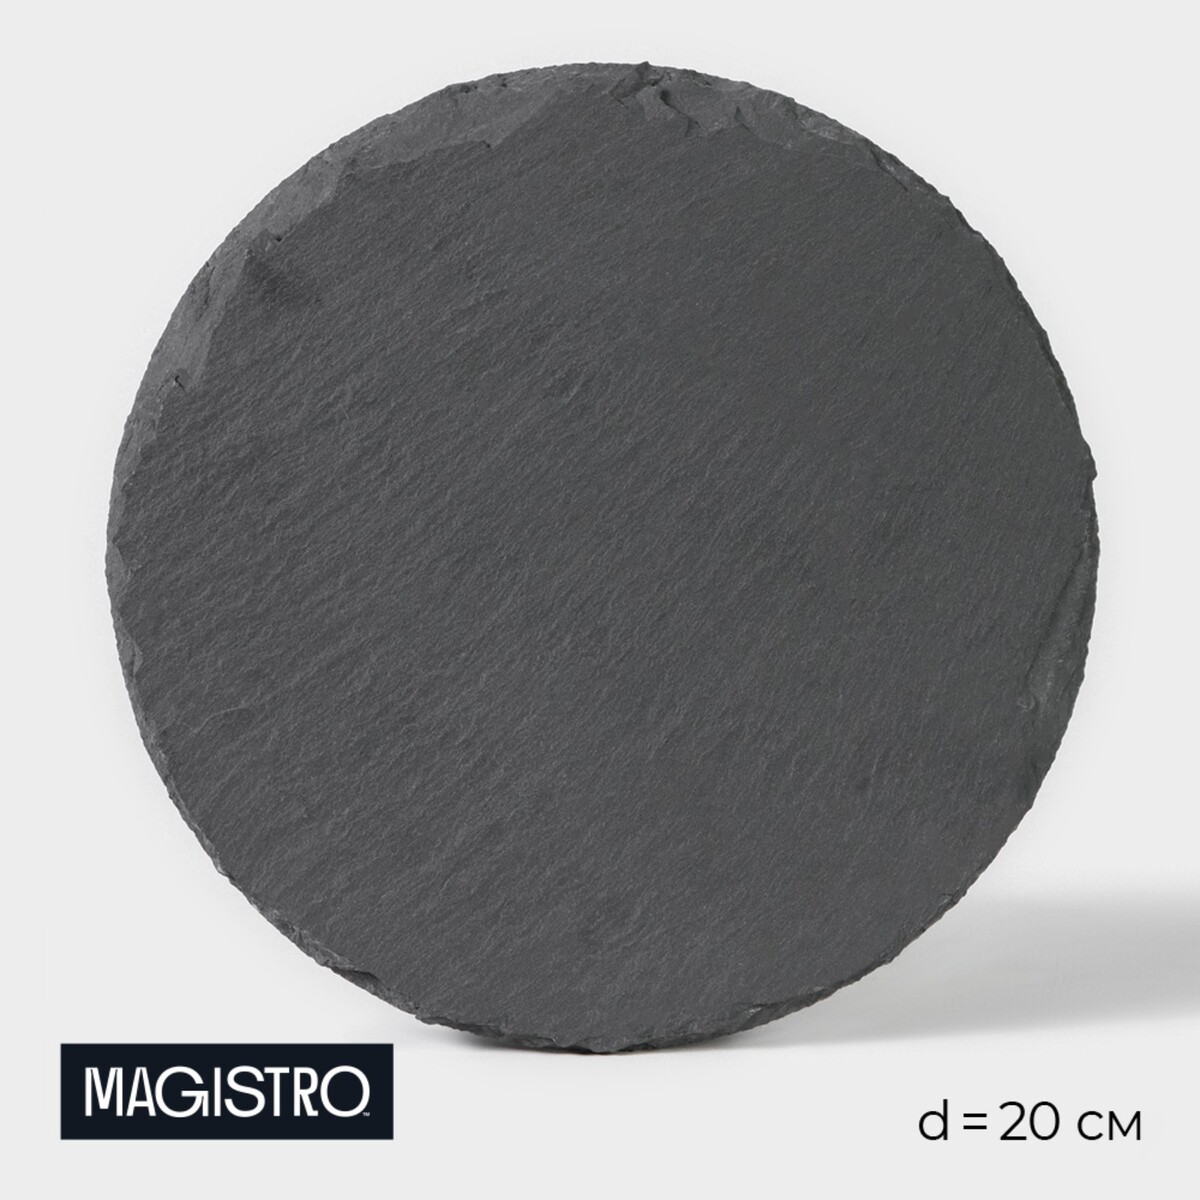 Доска для подачи из сланца magistro valley, d=20 см доска для подачи из сланца magistro valley 35×20 см